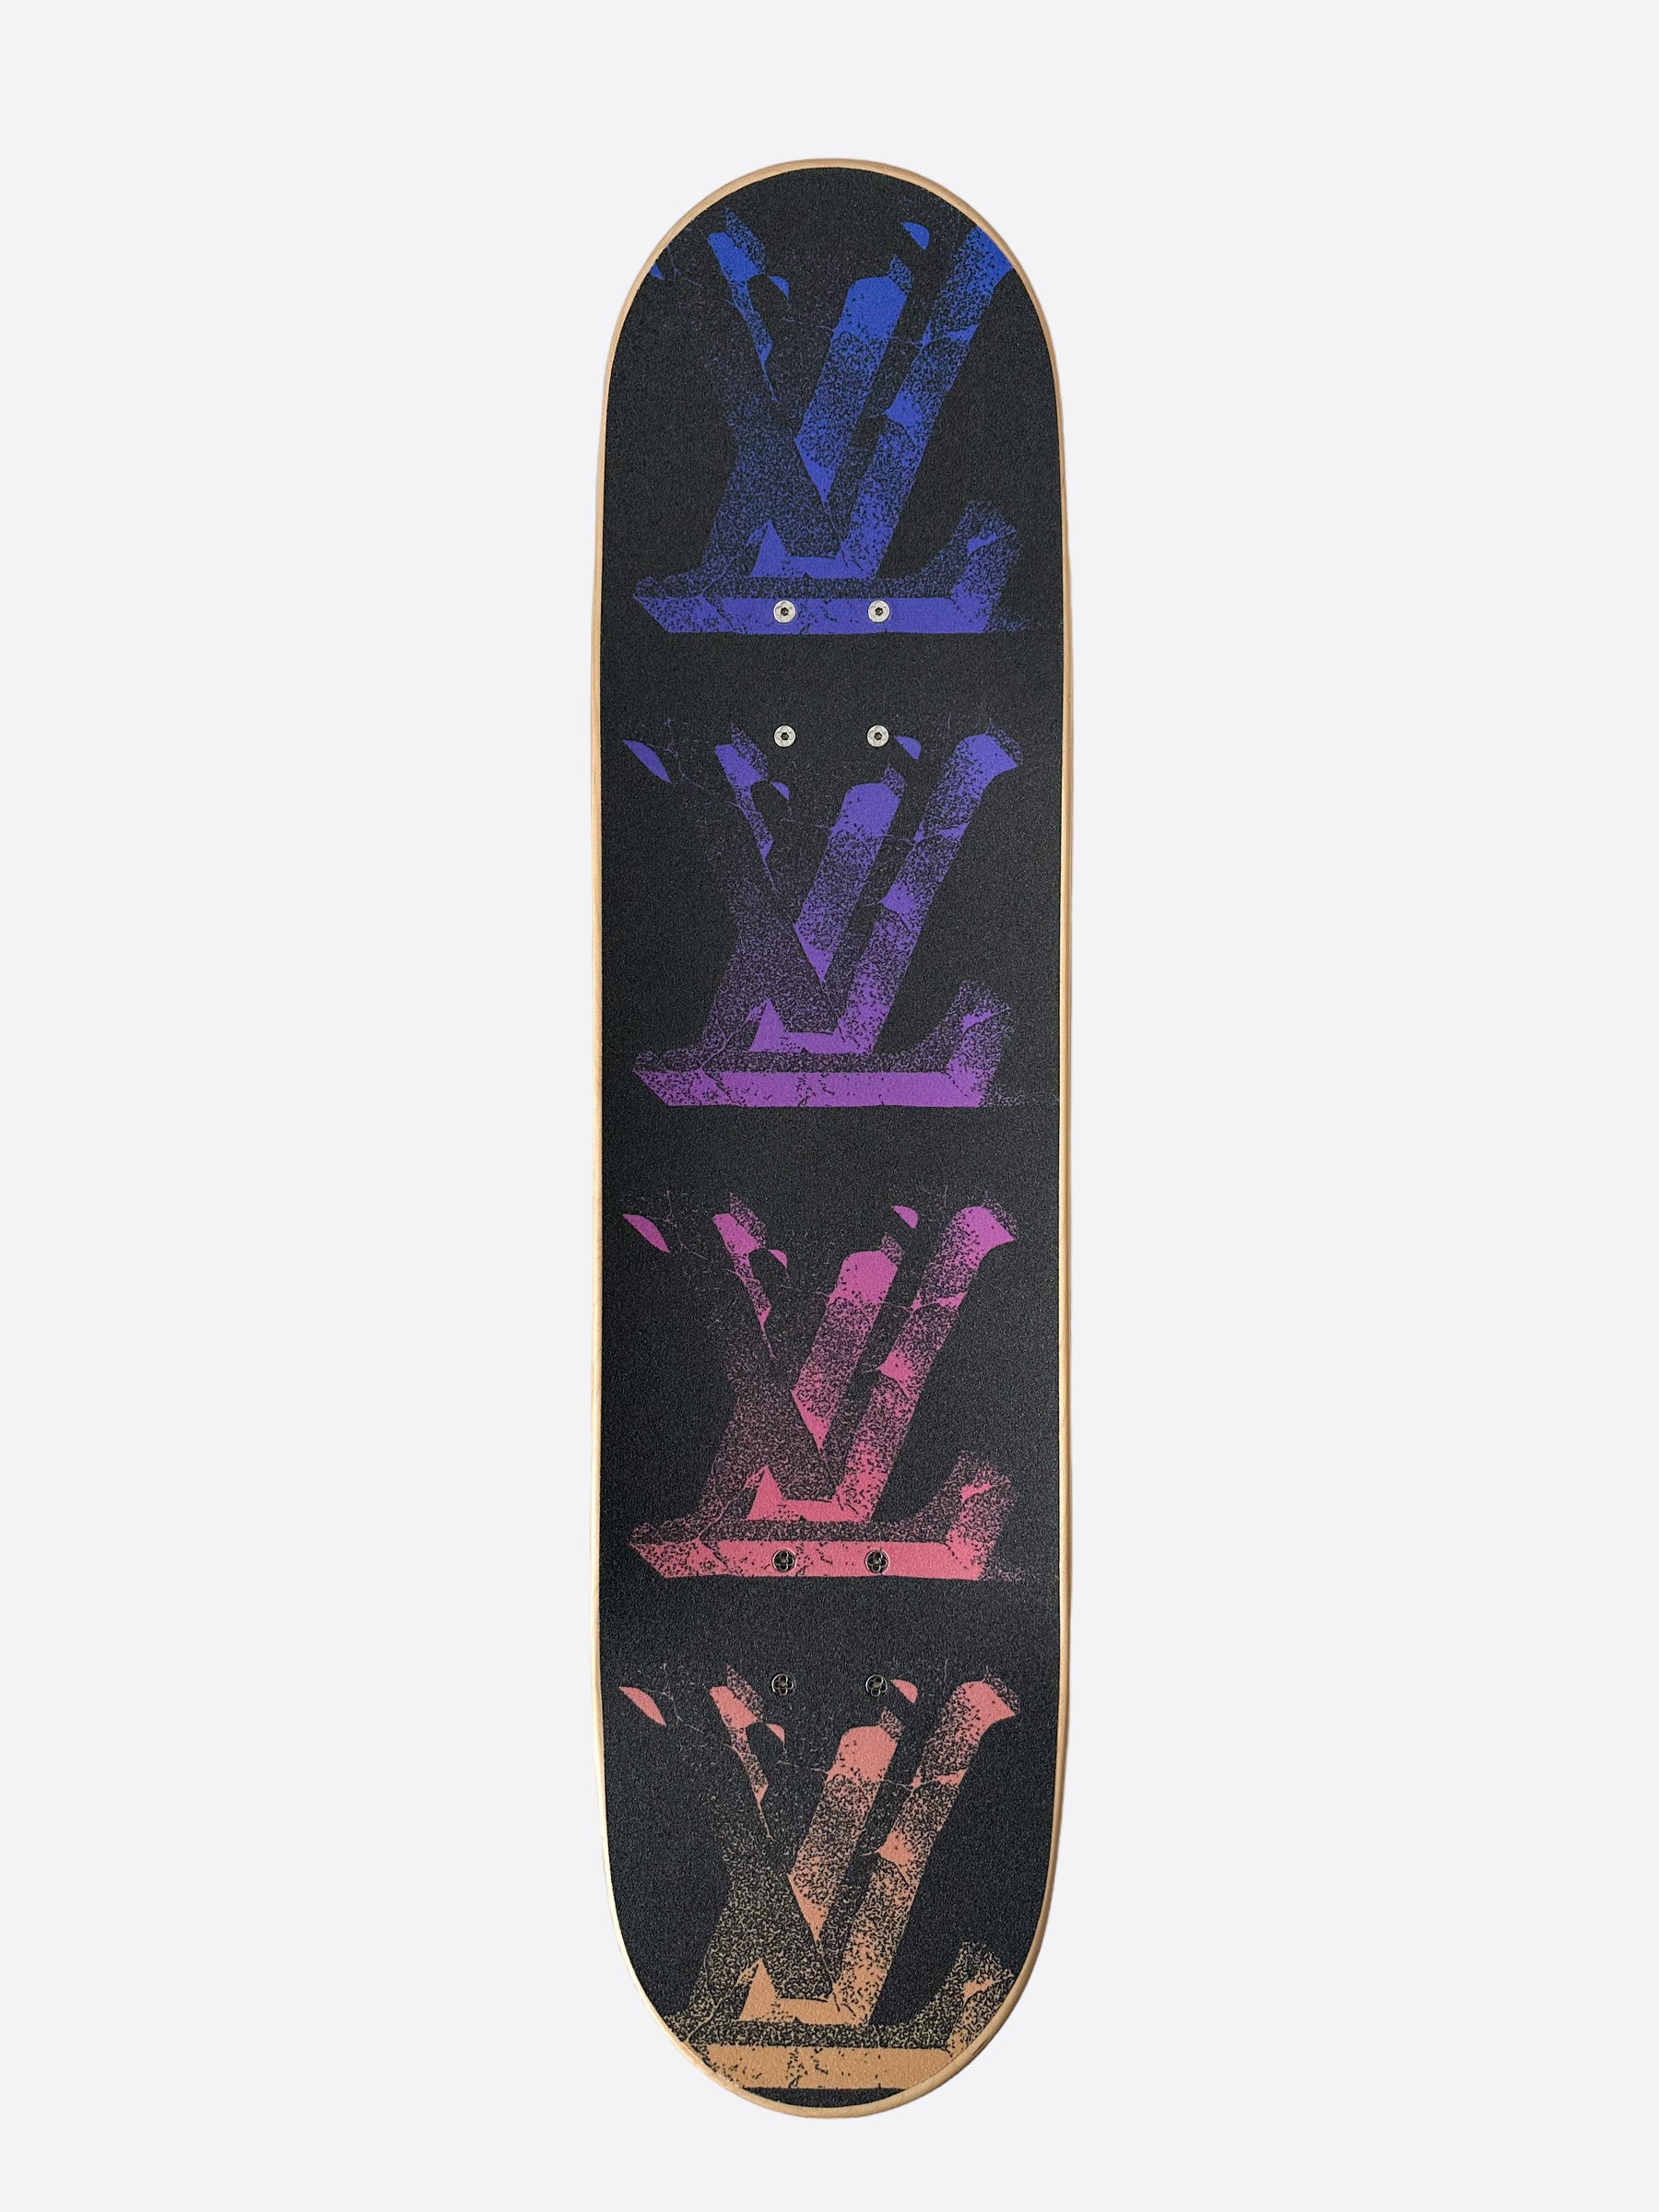 Skateboard pop art artwork Dubai Louis Vuitton by Roy van der laars (2022)  : Digital Digital on Wood - SINGULART